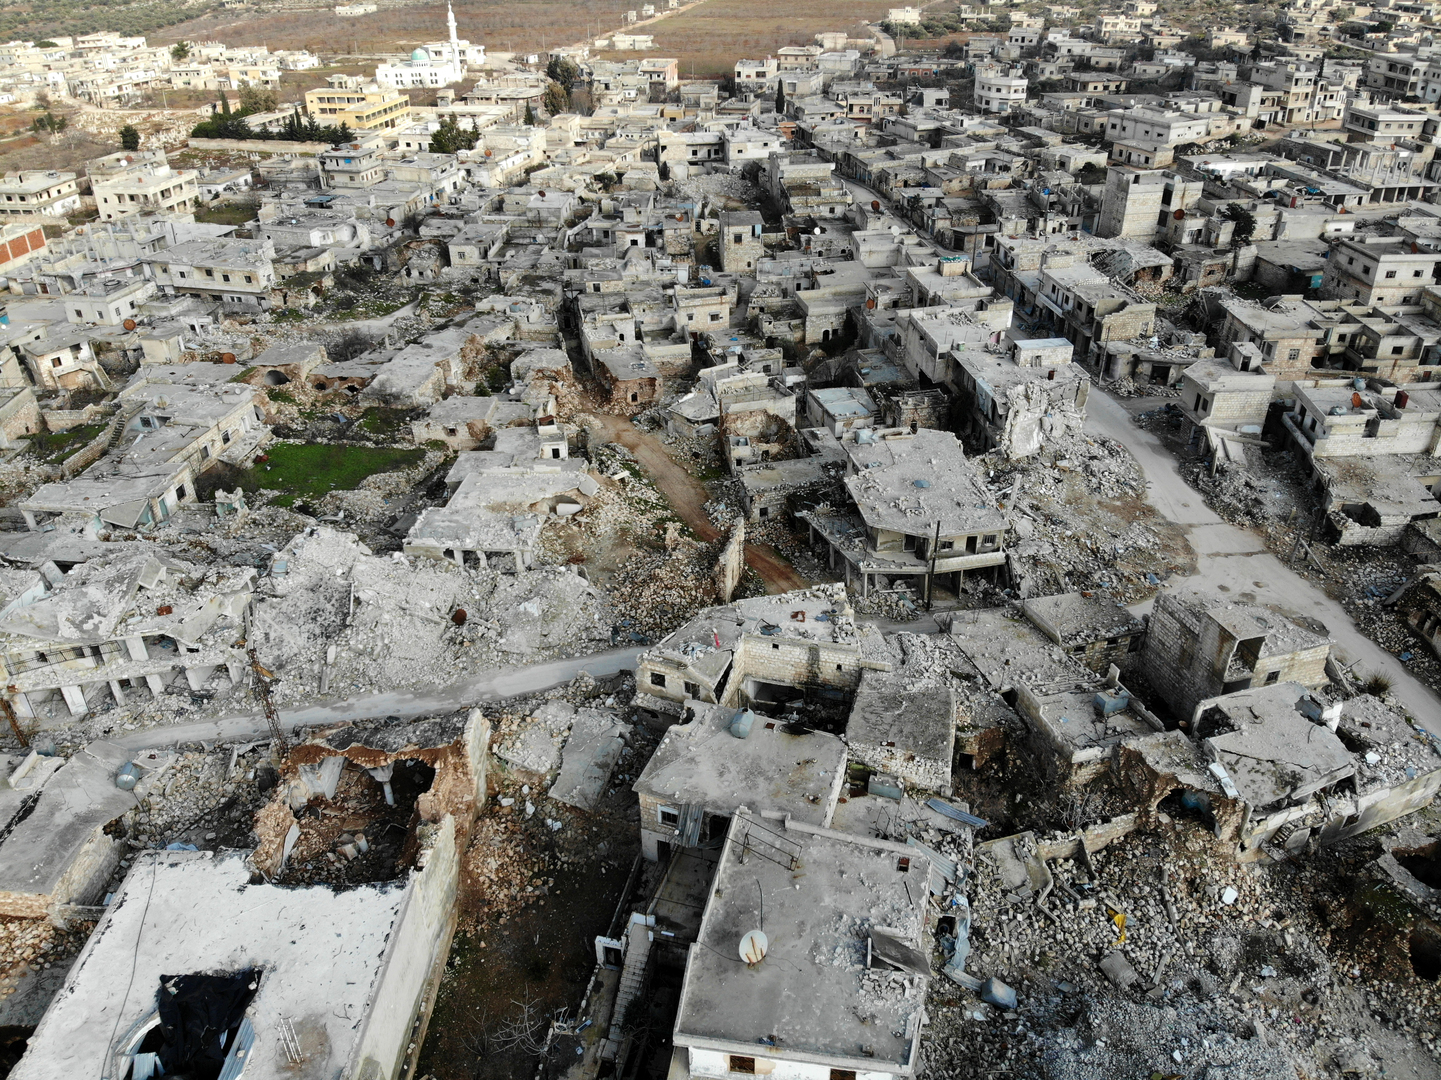 Après la reconquête d'Alep, place à la résurrection économique ? Les défis du rétablissement syrien